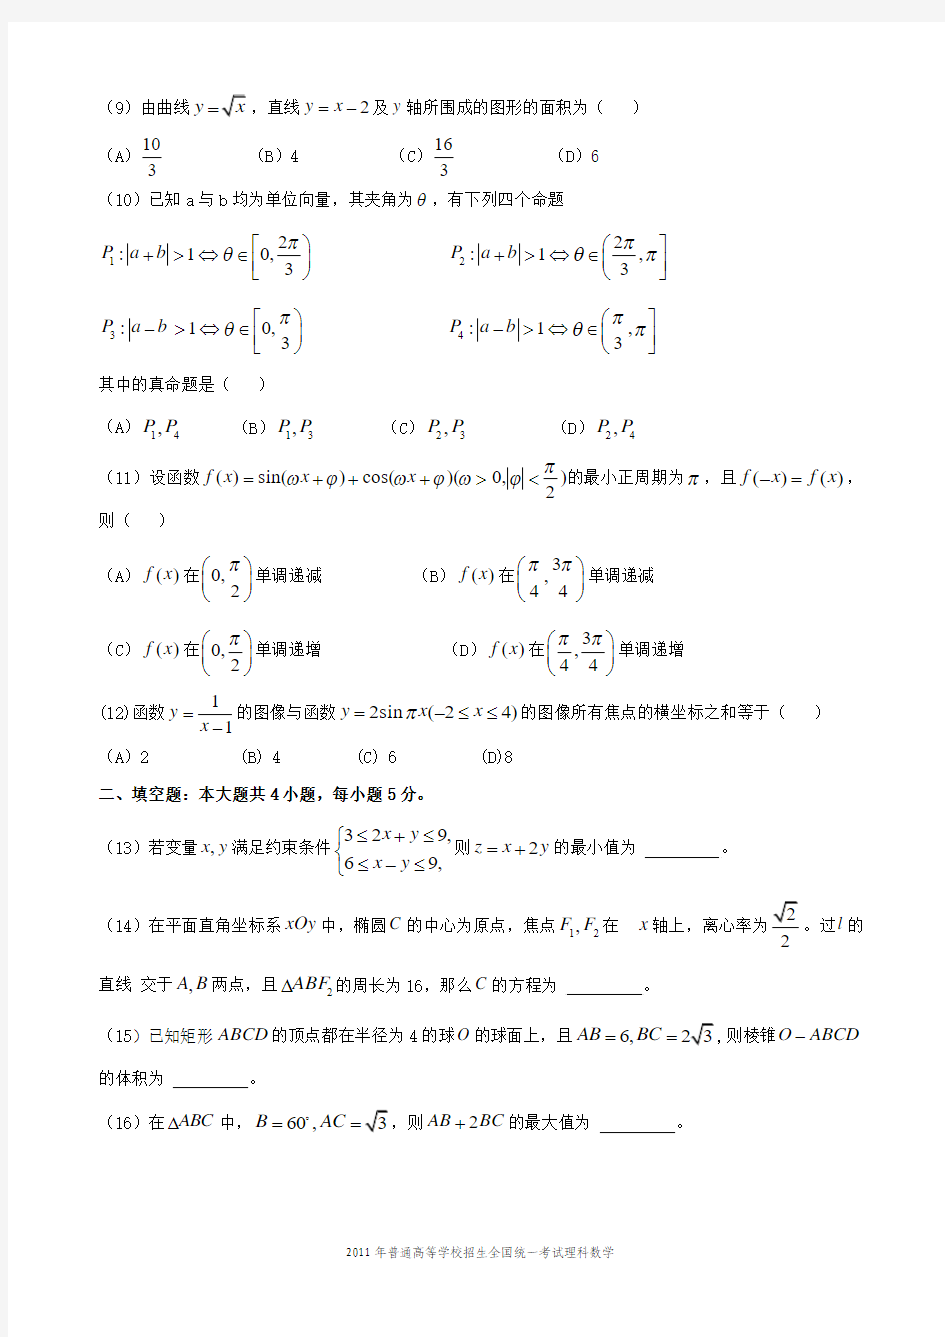 2011年高考数学试卷及答案(海南、宁夏理)A4